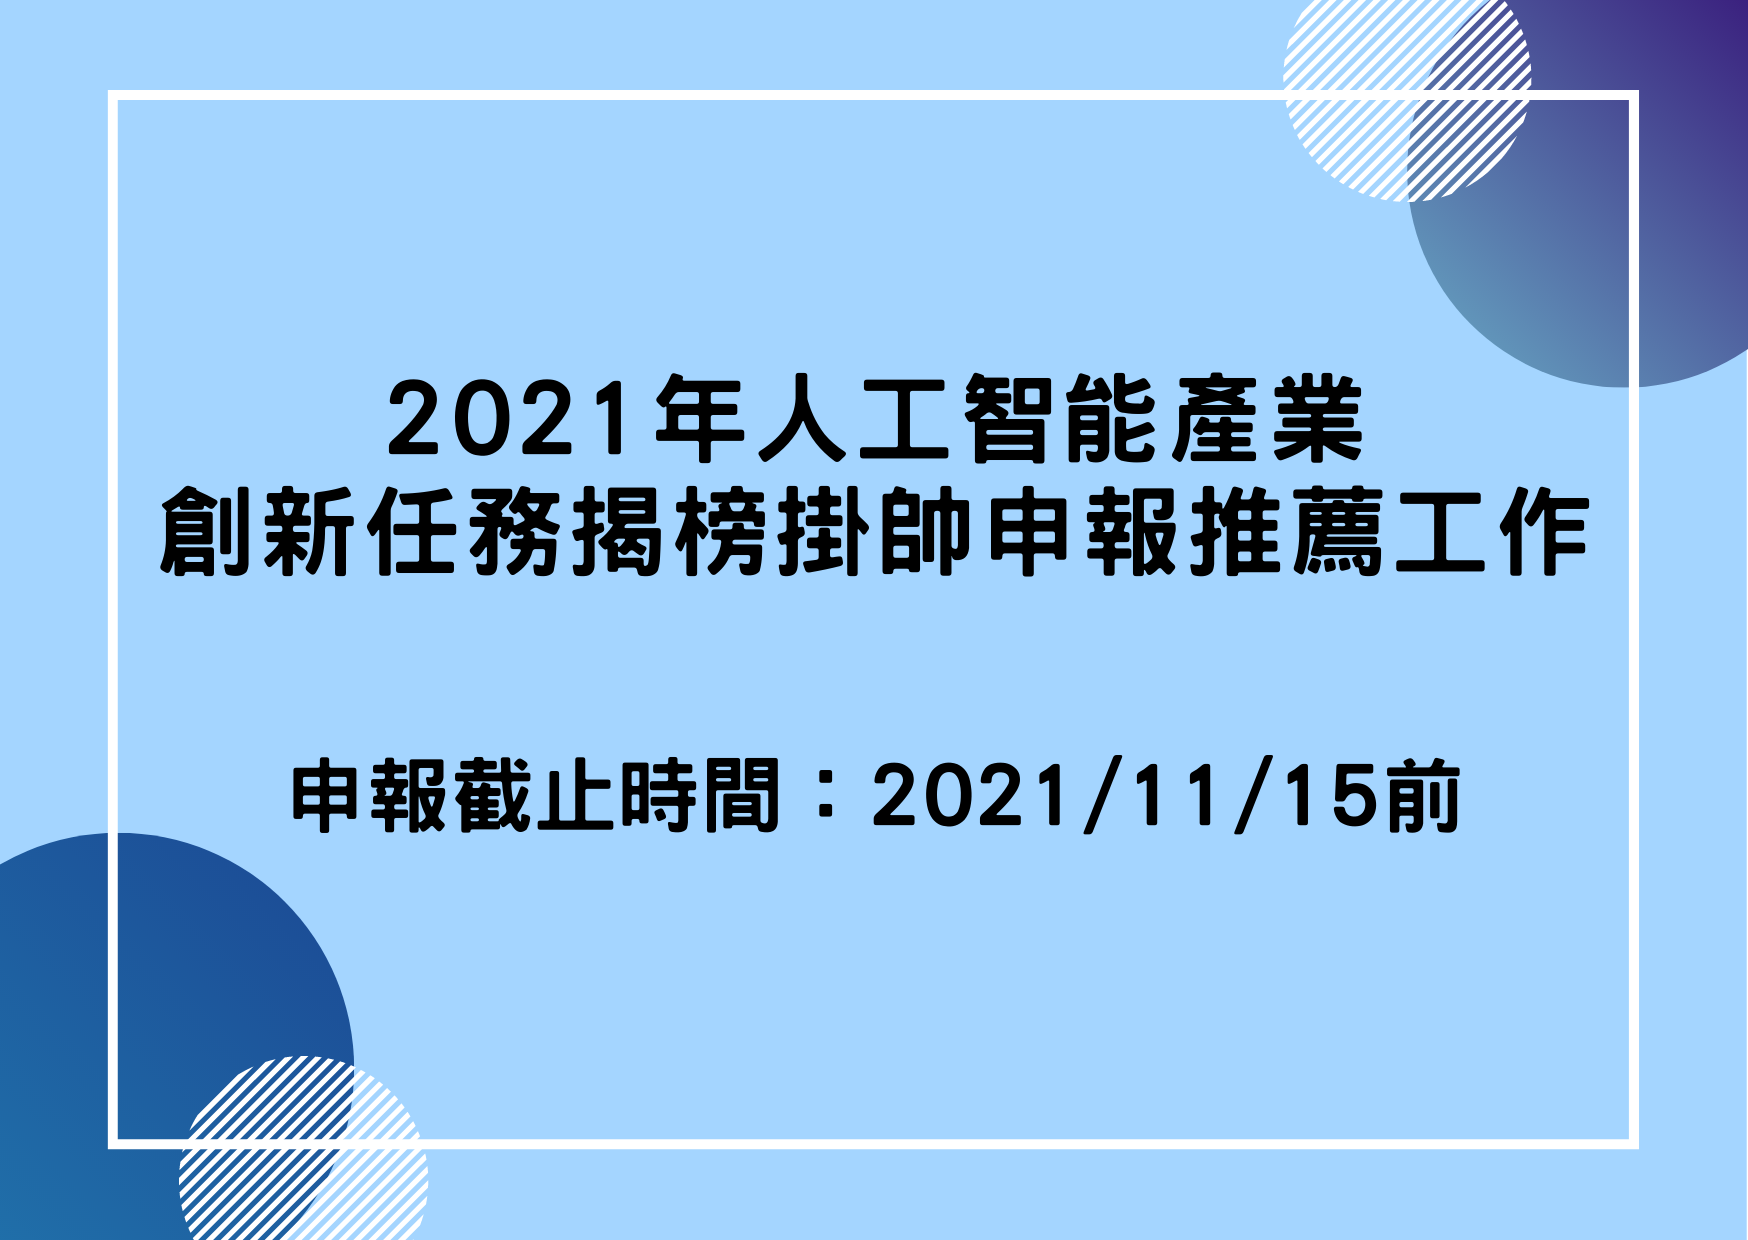 【政策申報】2021年人工智能產業創新任務揭榜掛帥申報推薦工作開始！